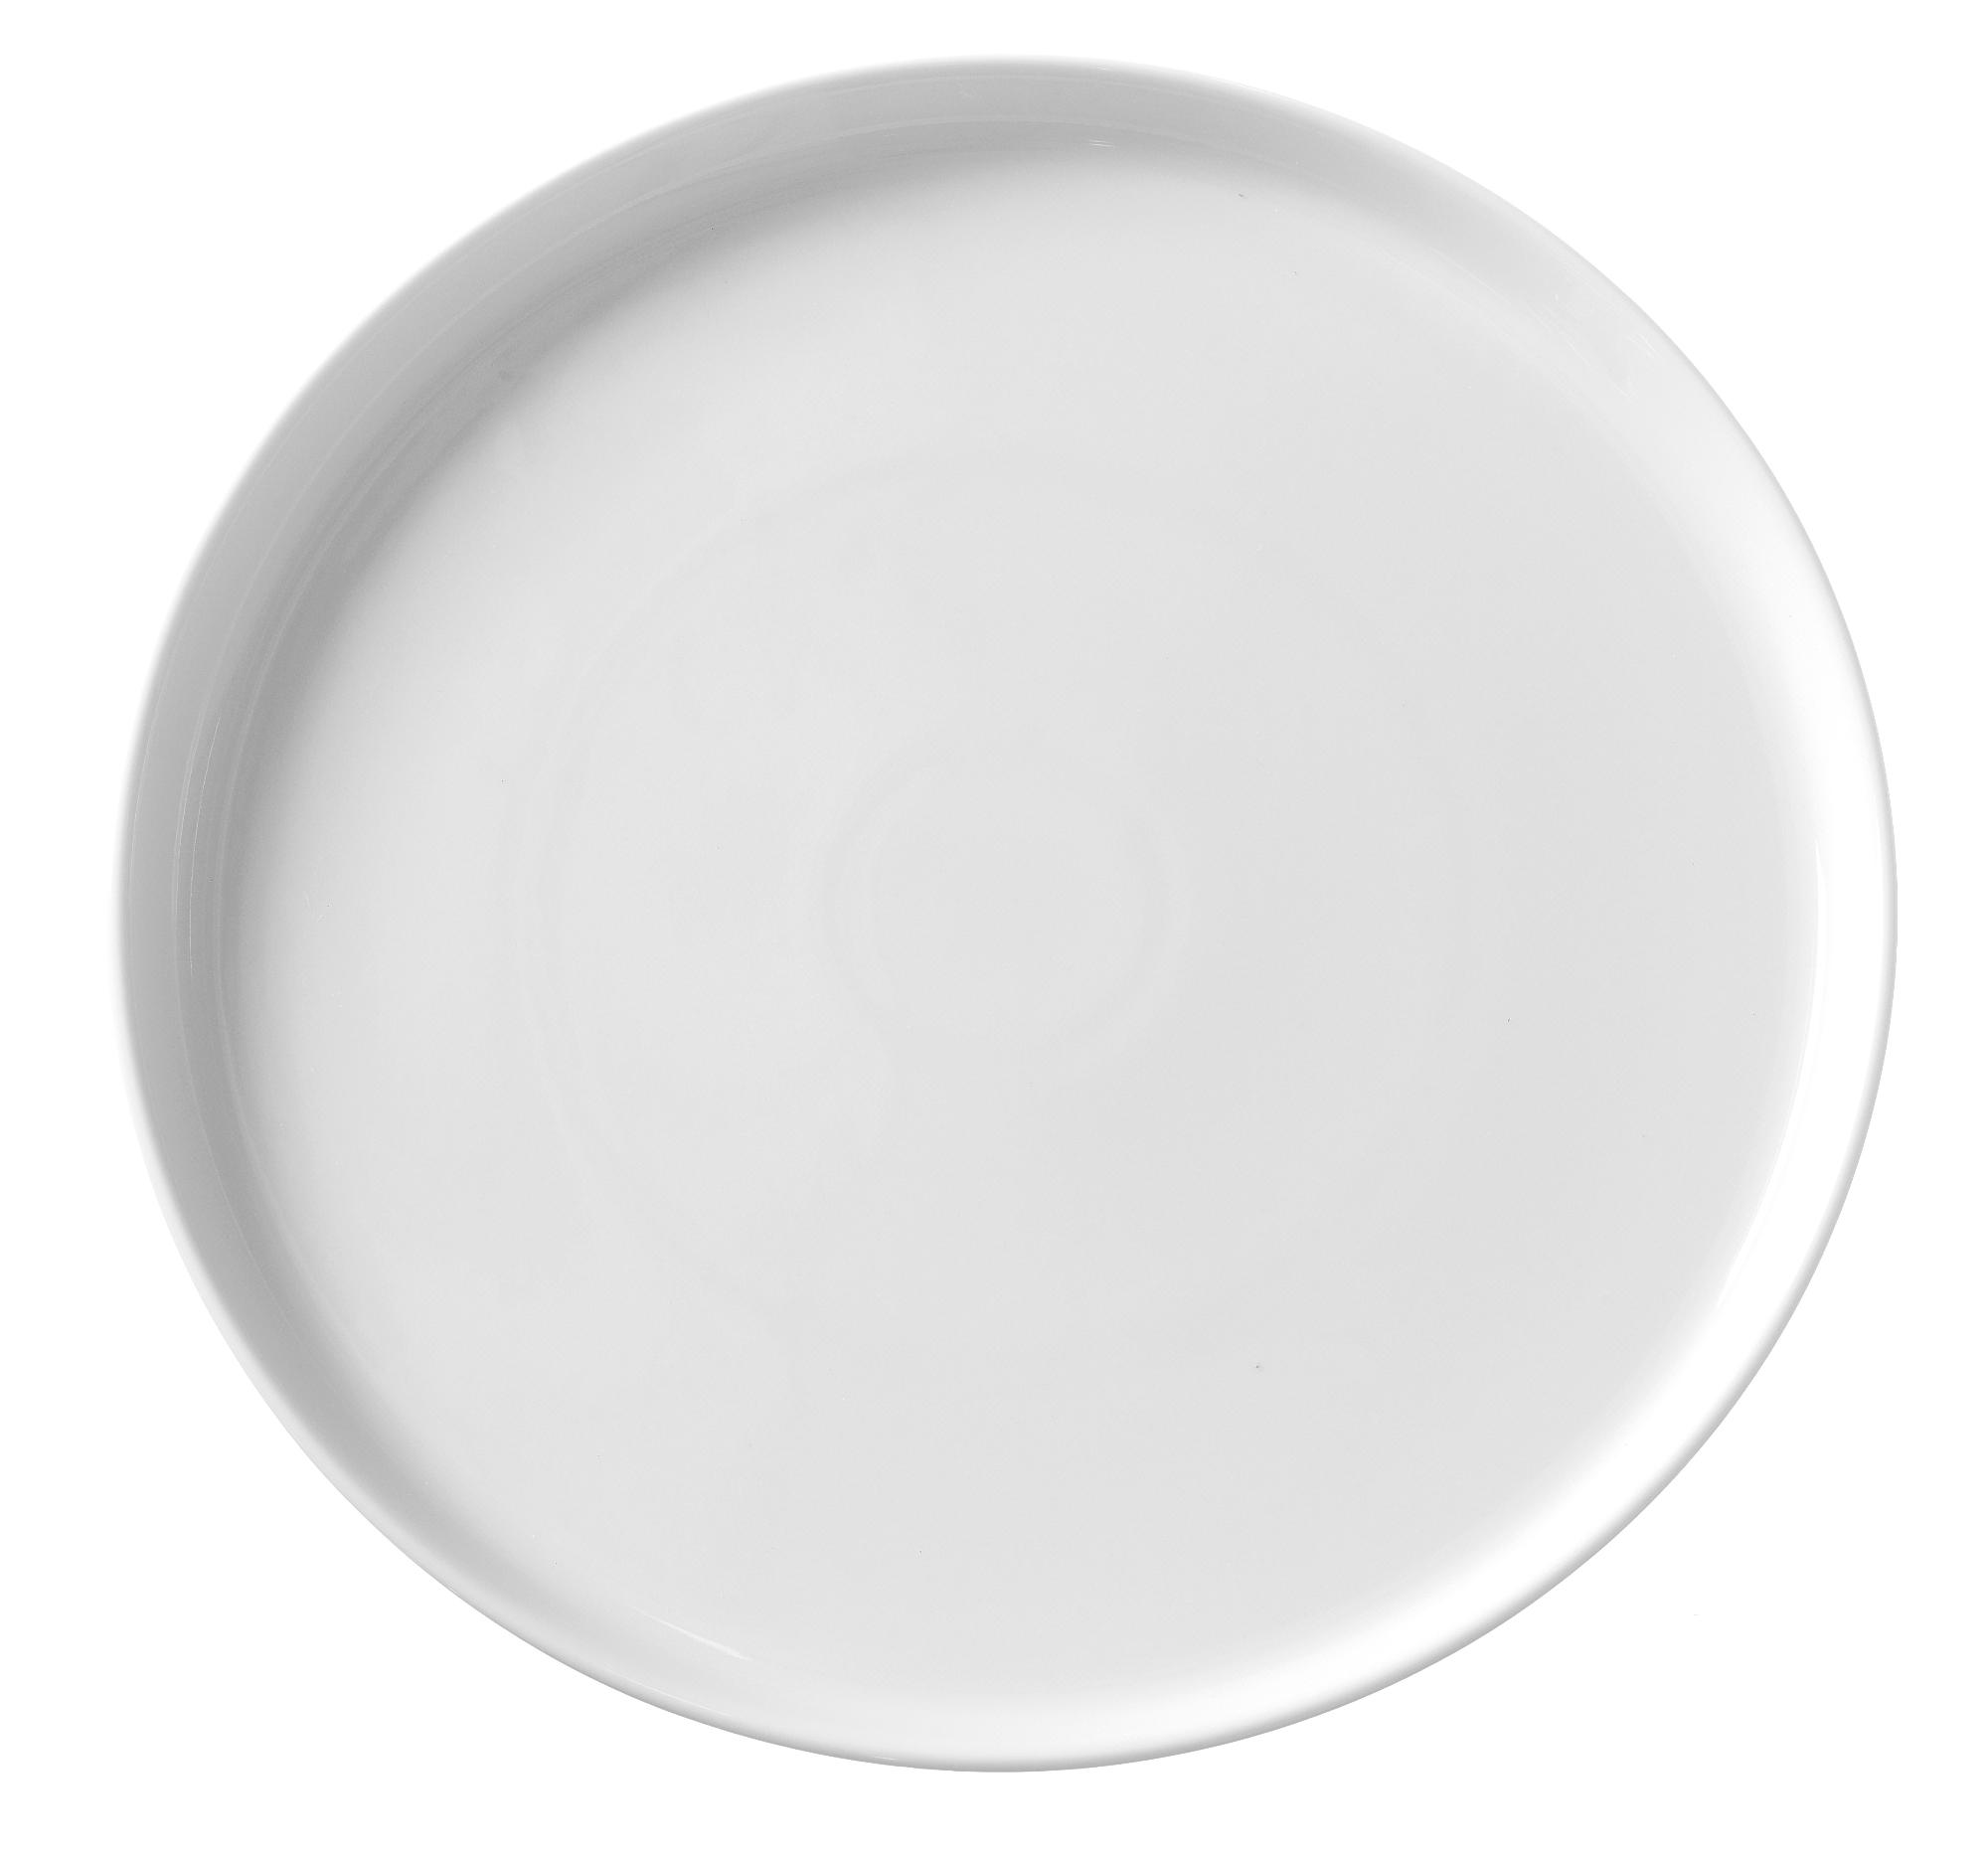 Bianco high edge plate, 290mm